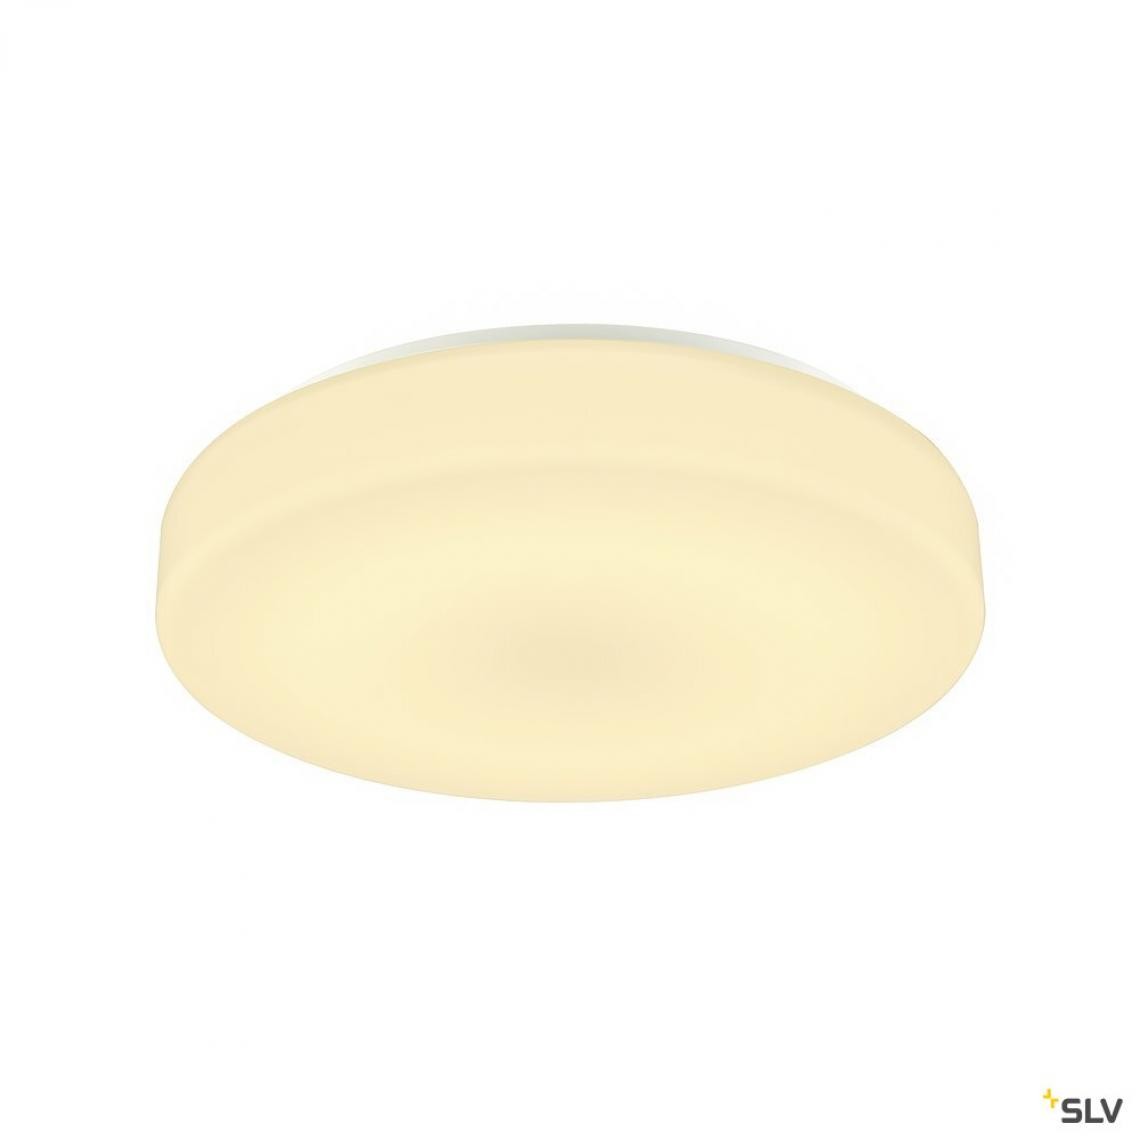 Slv - Applique et plafonnier intérieur rond LIPSY® 40, Drum, blanc, LED - Ø 35 cm - Applique, hublot